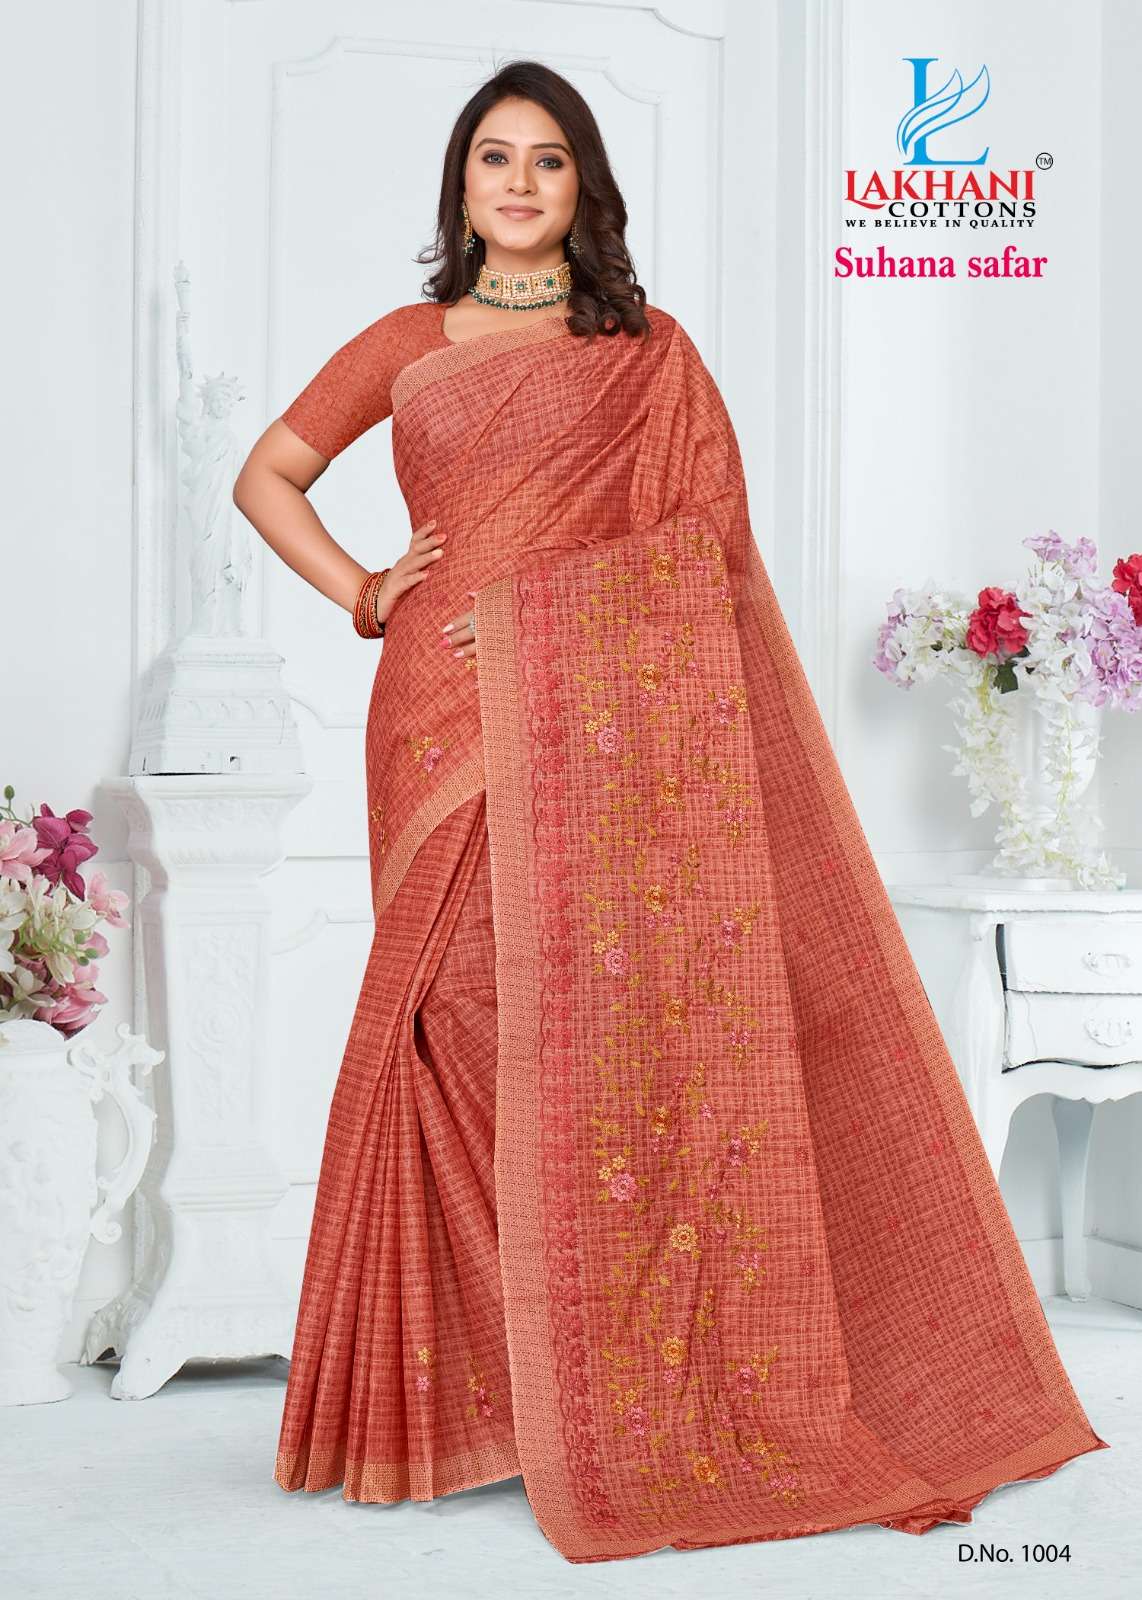 suhana safar new design launch saree pure cotton saree heavy embroidery work pure cotton saree collection  